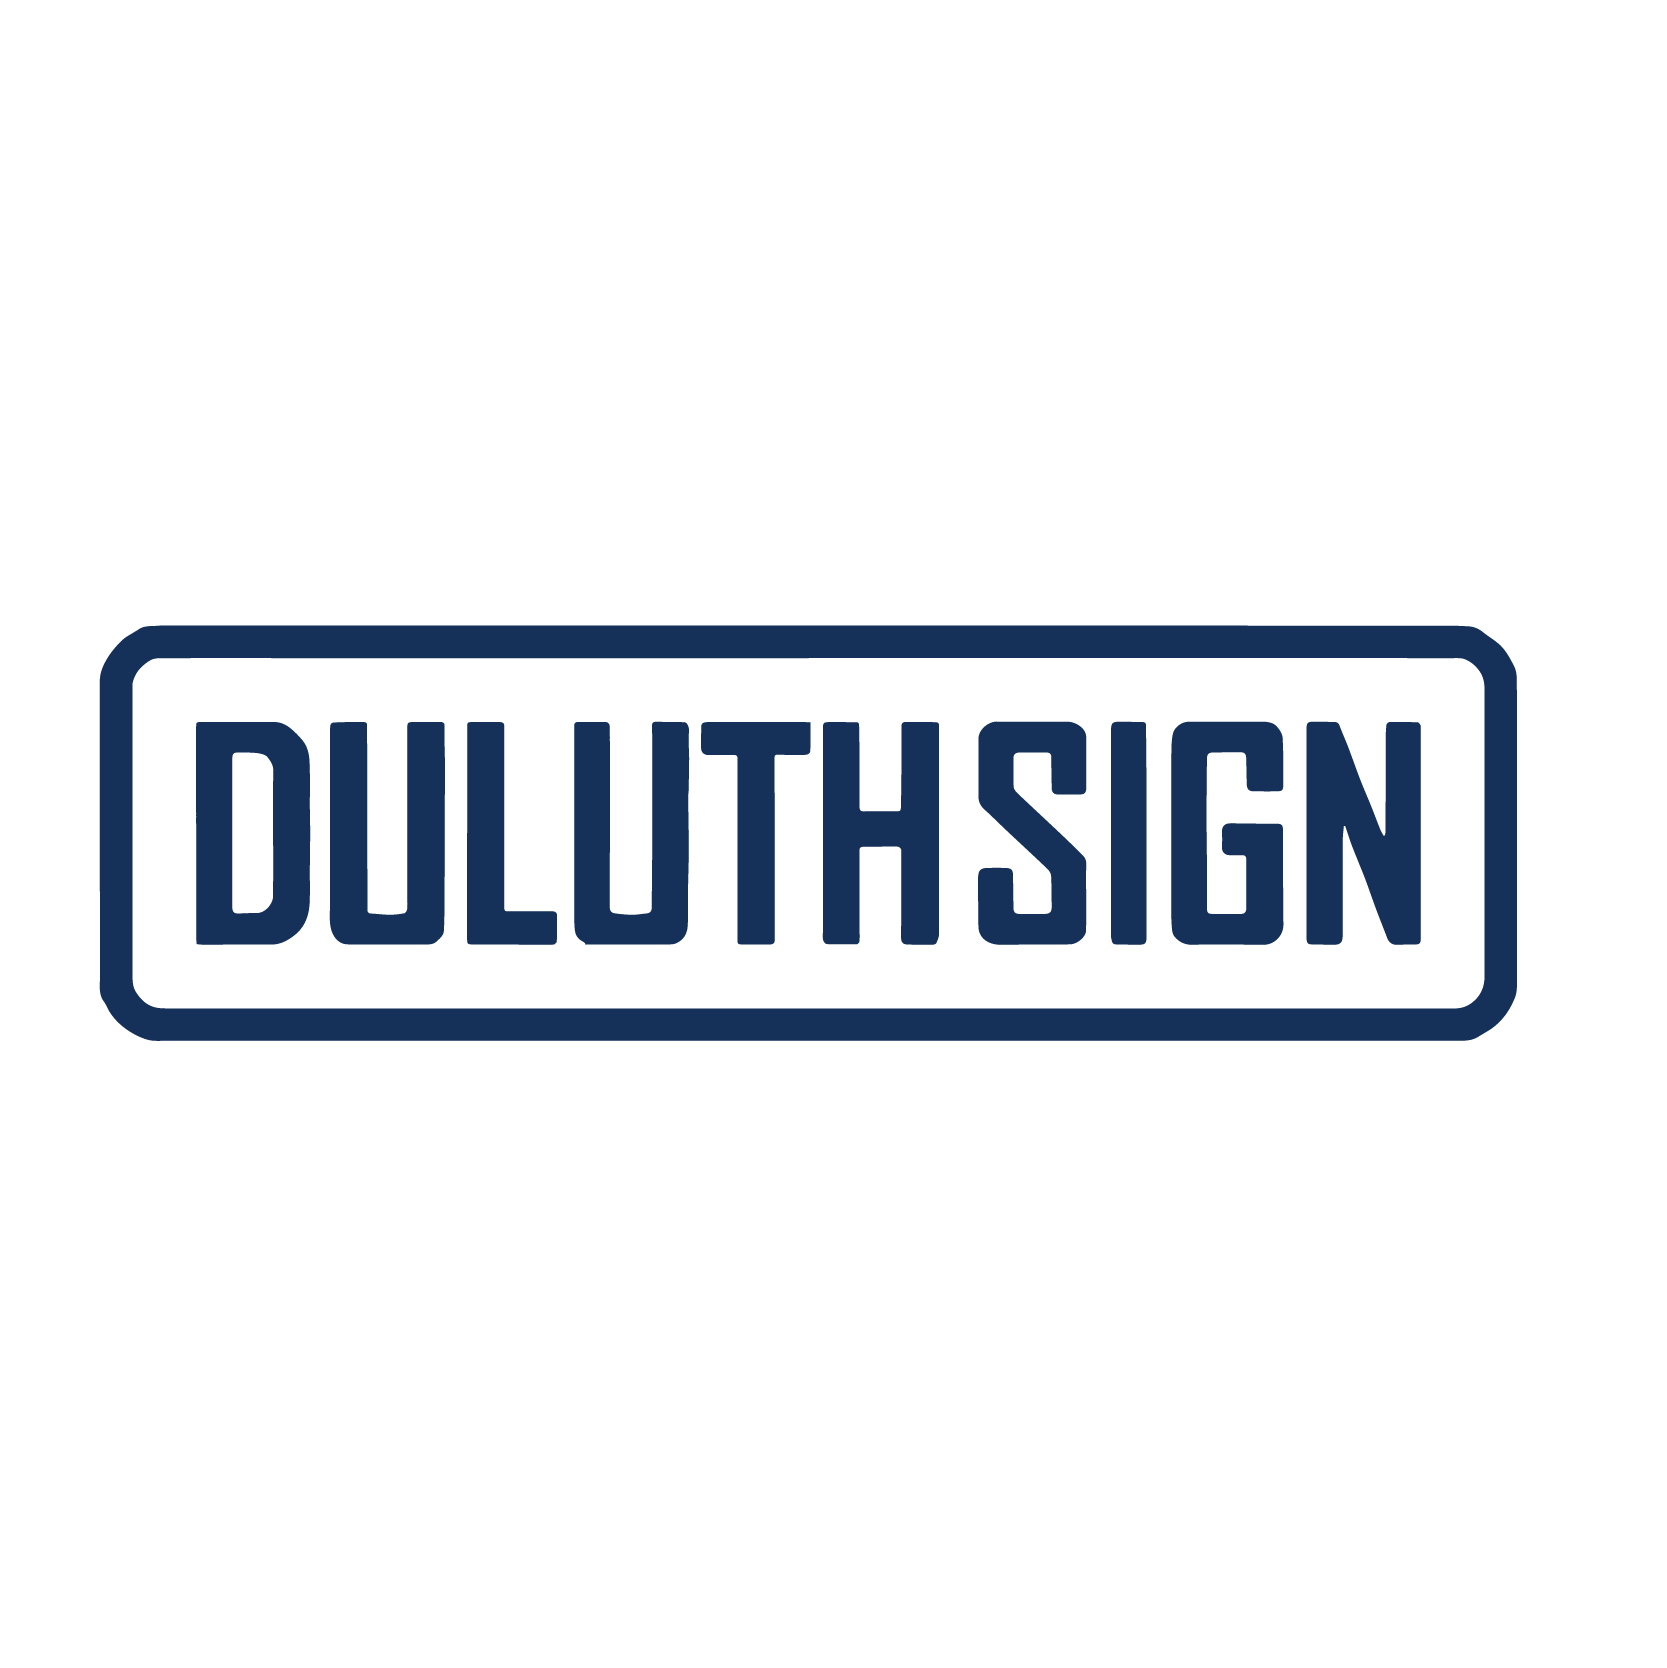 Duluth FC Sponsor Duluth Sign